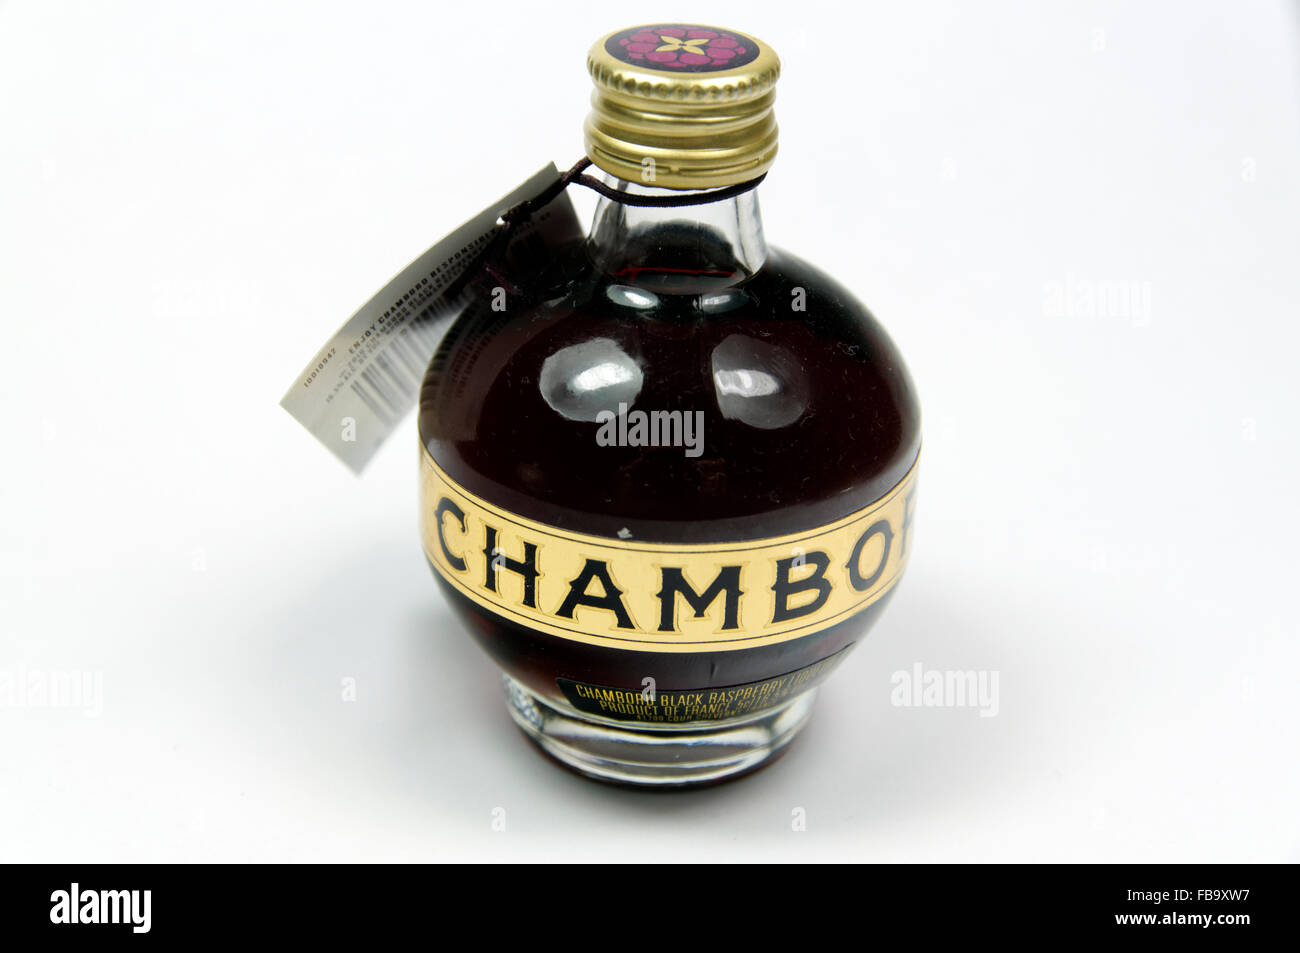 Bouteille de liqueur de framboise noire Chambord. Banque D'Images